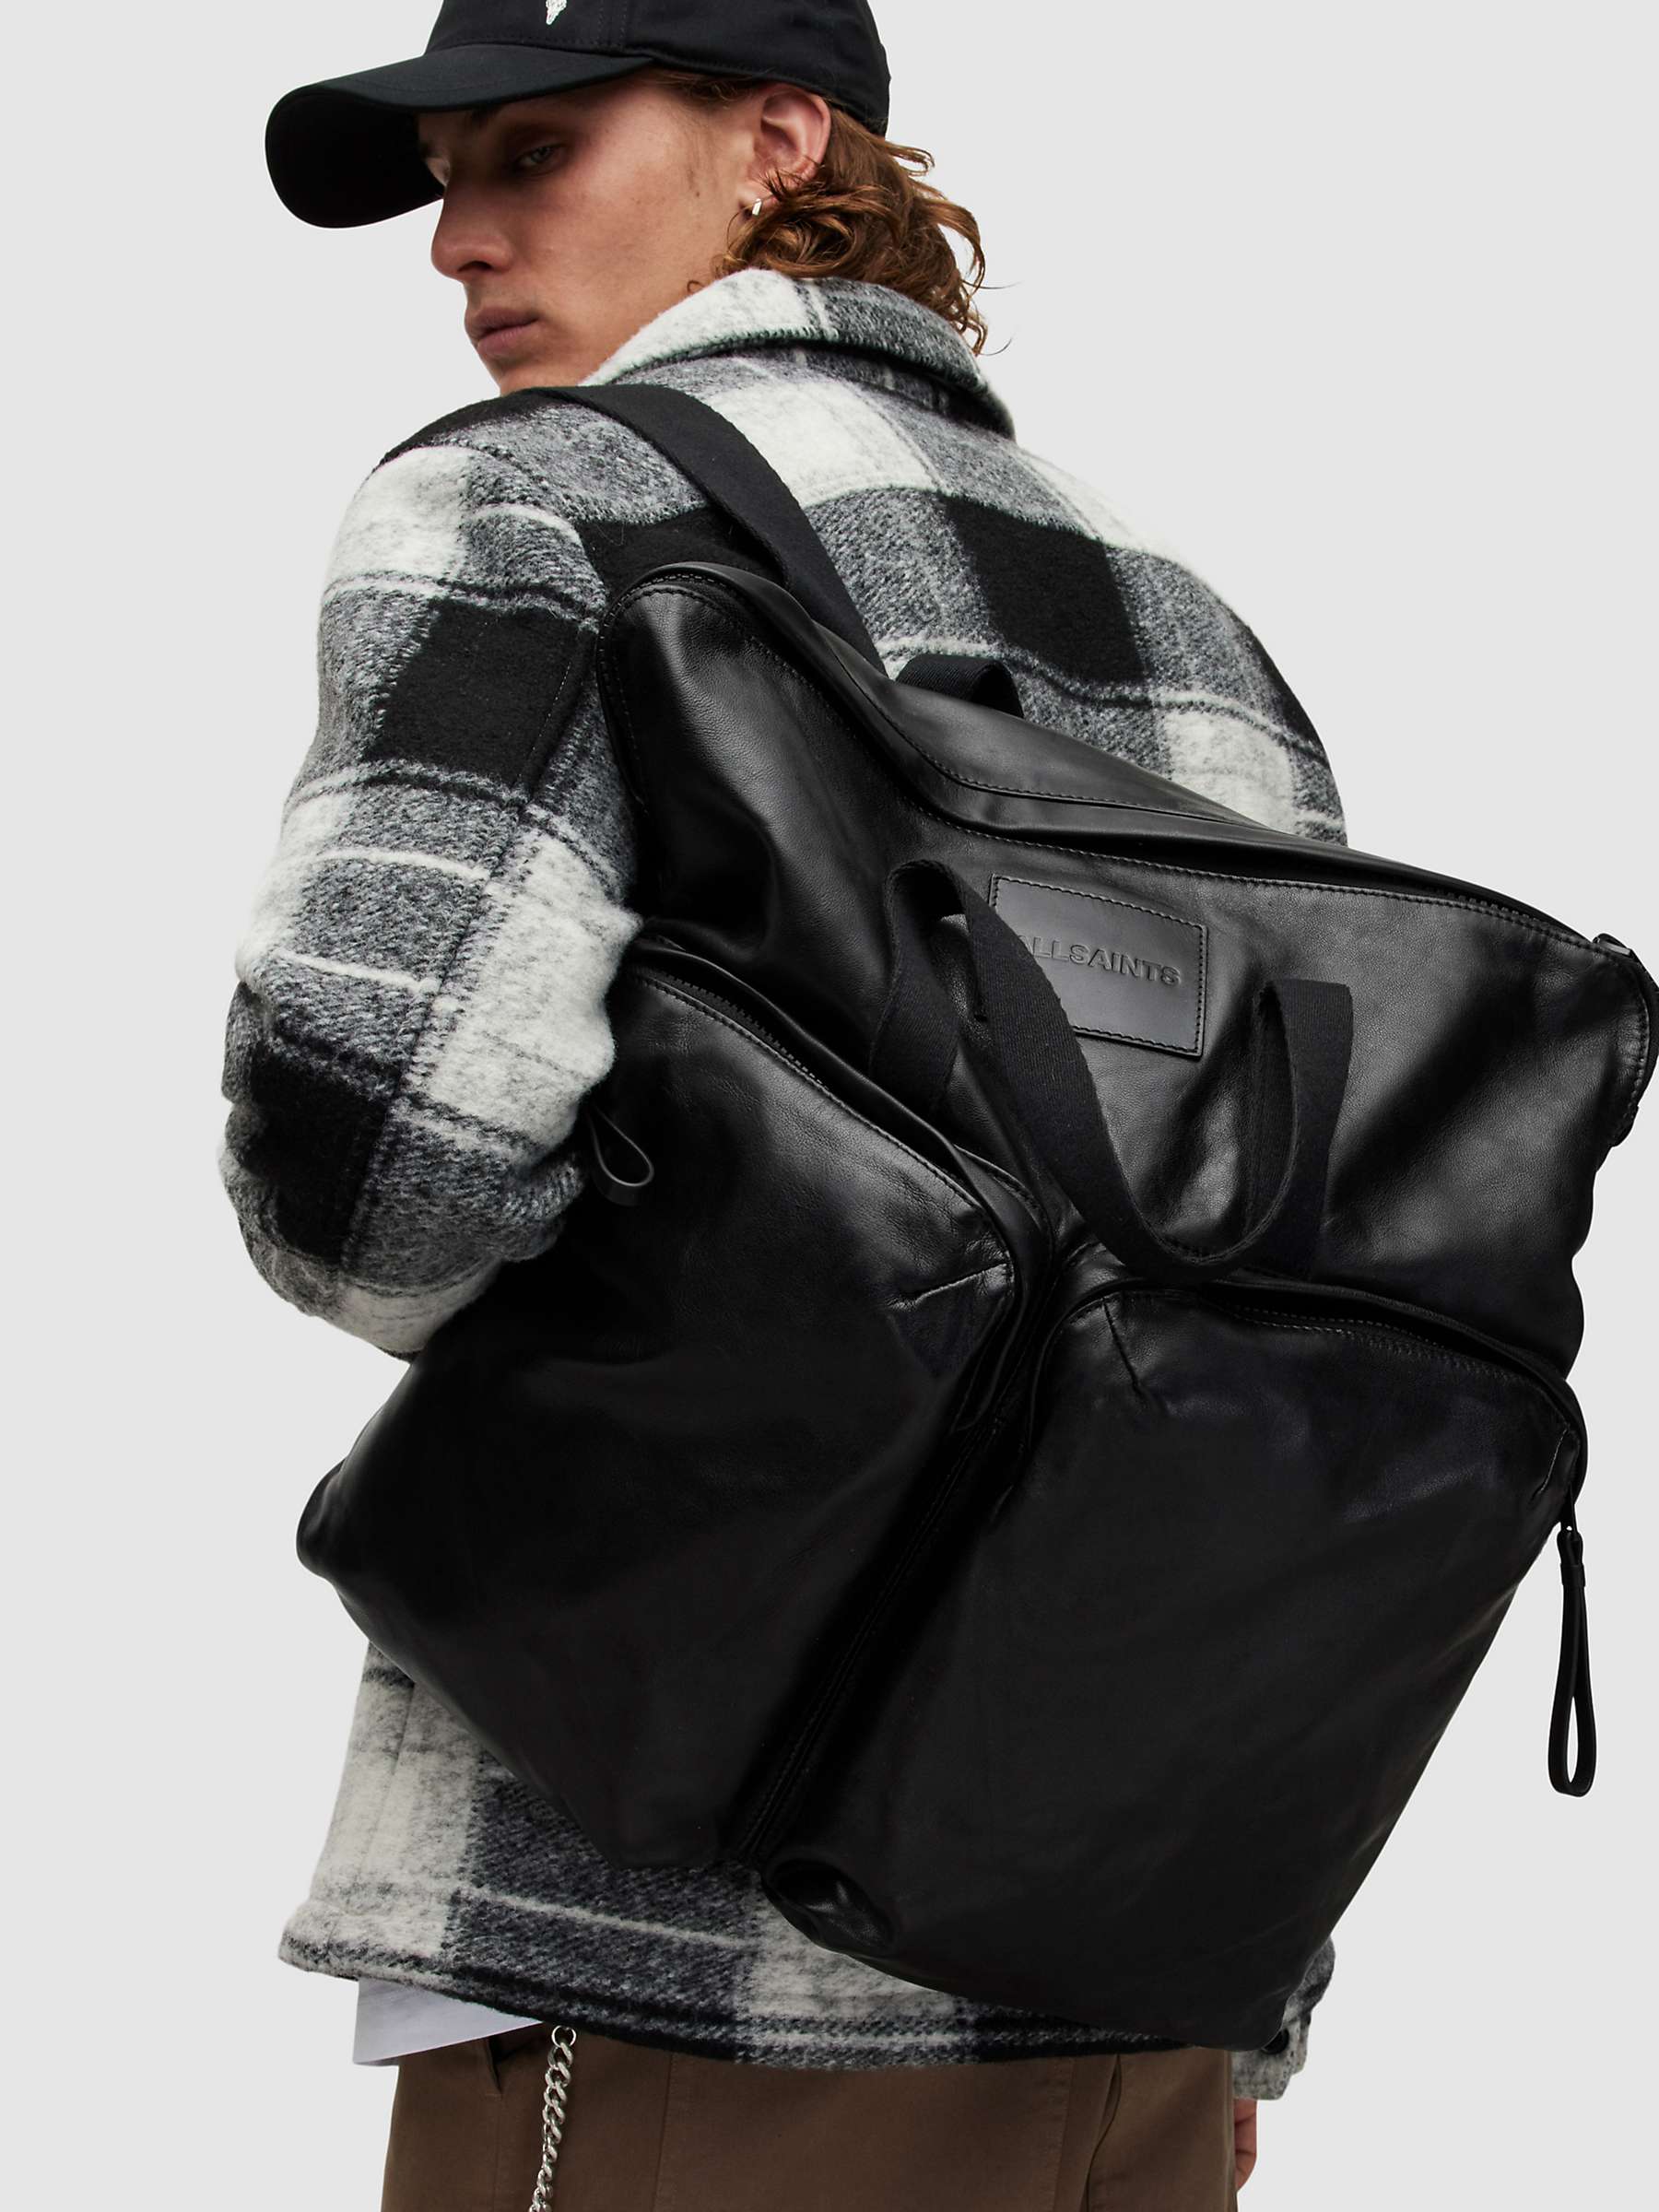 Buy AllSaints Force Backpack, Black Online at johnlewis.com